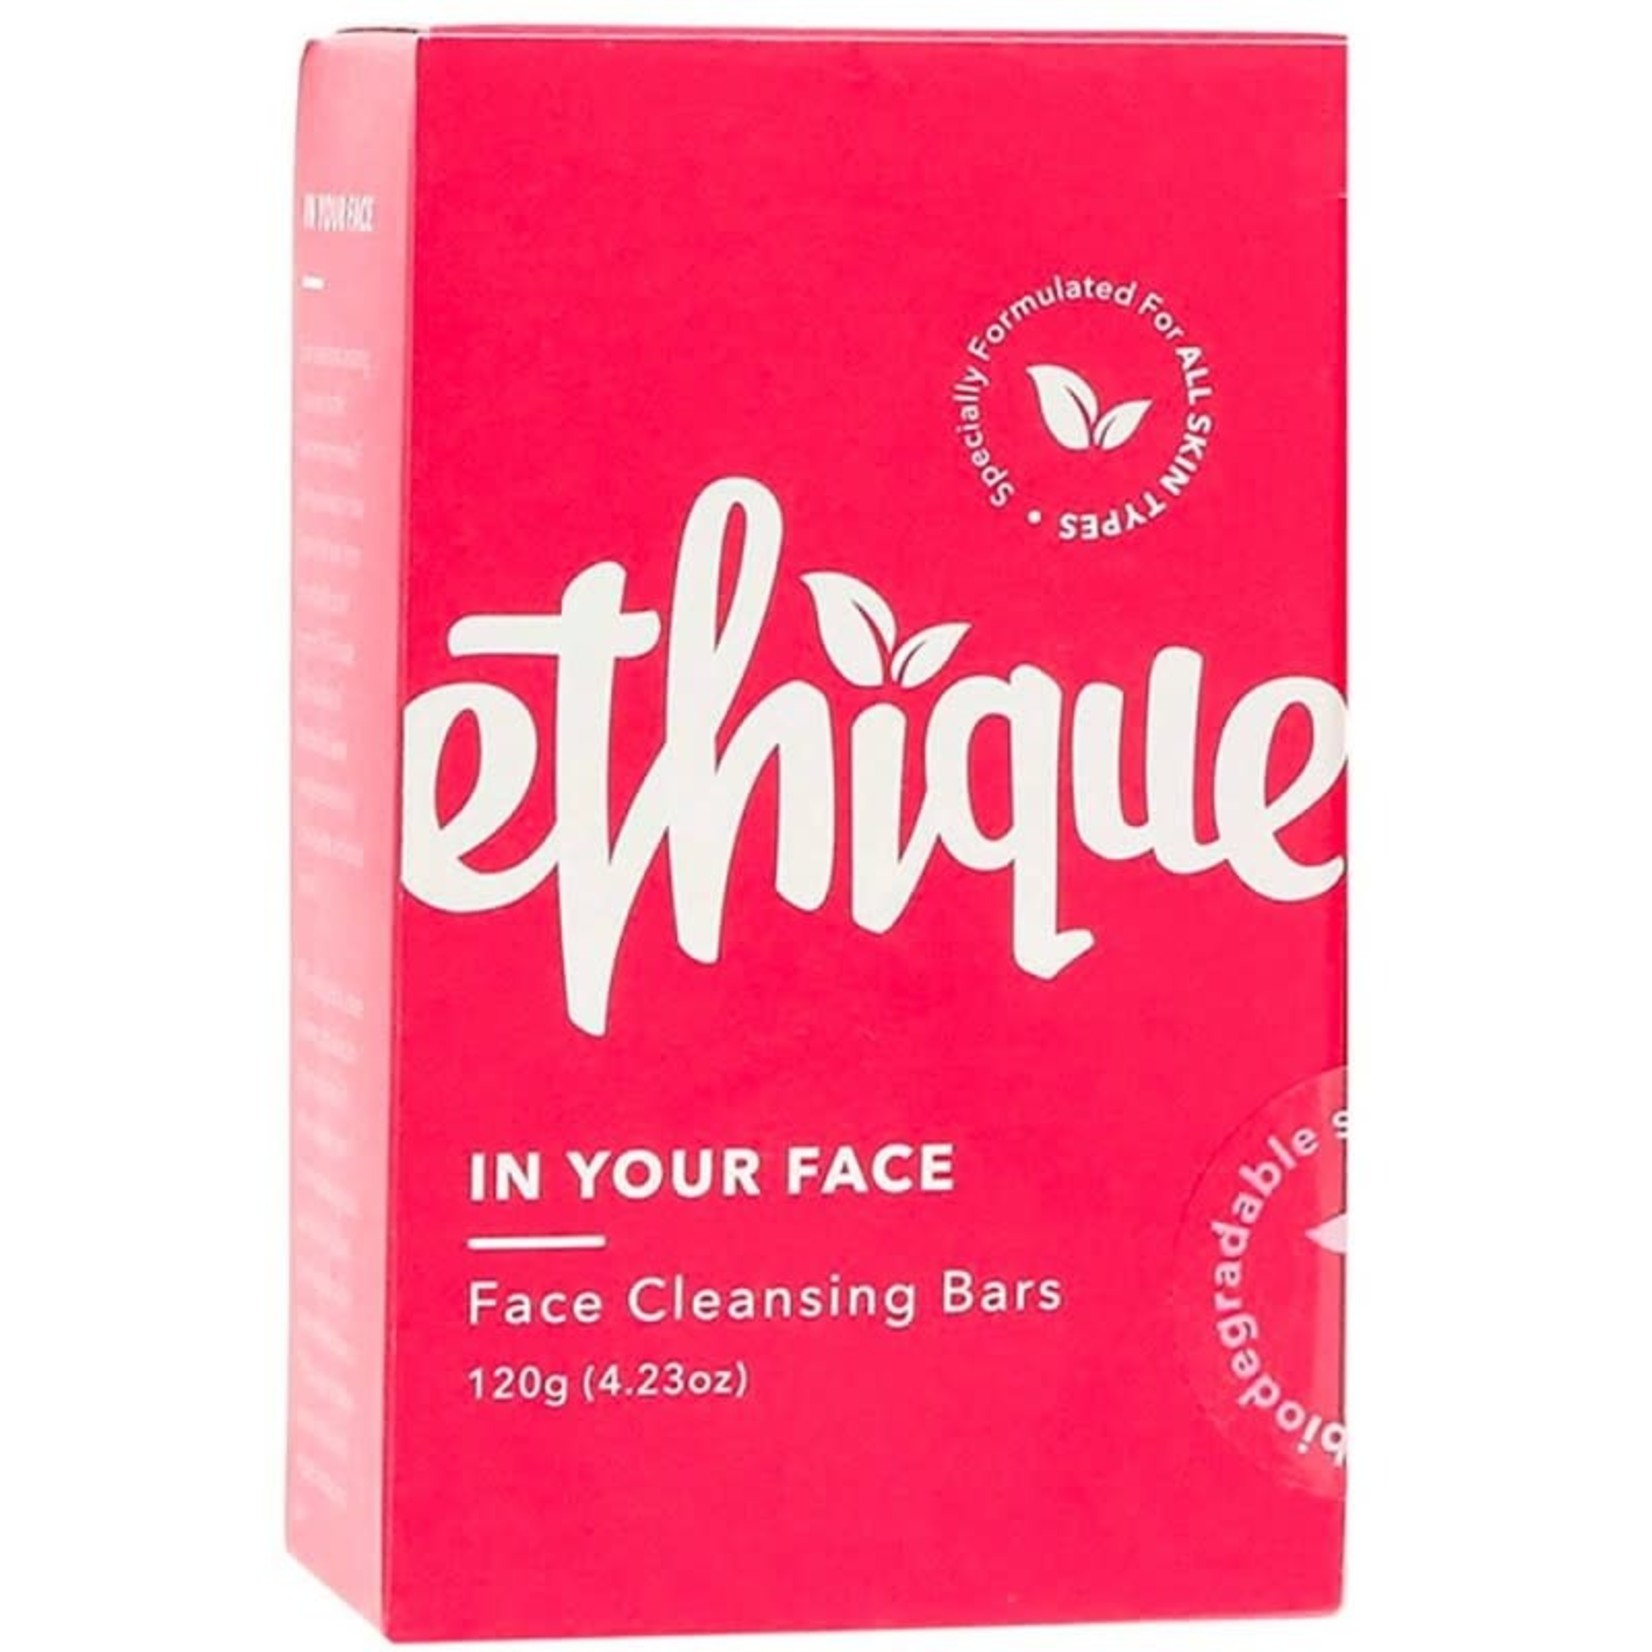 Ethique Ethique Face Cleanser Bar In Your Face